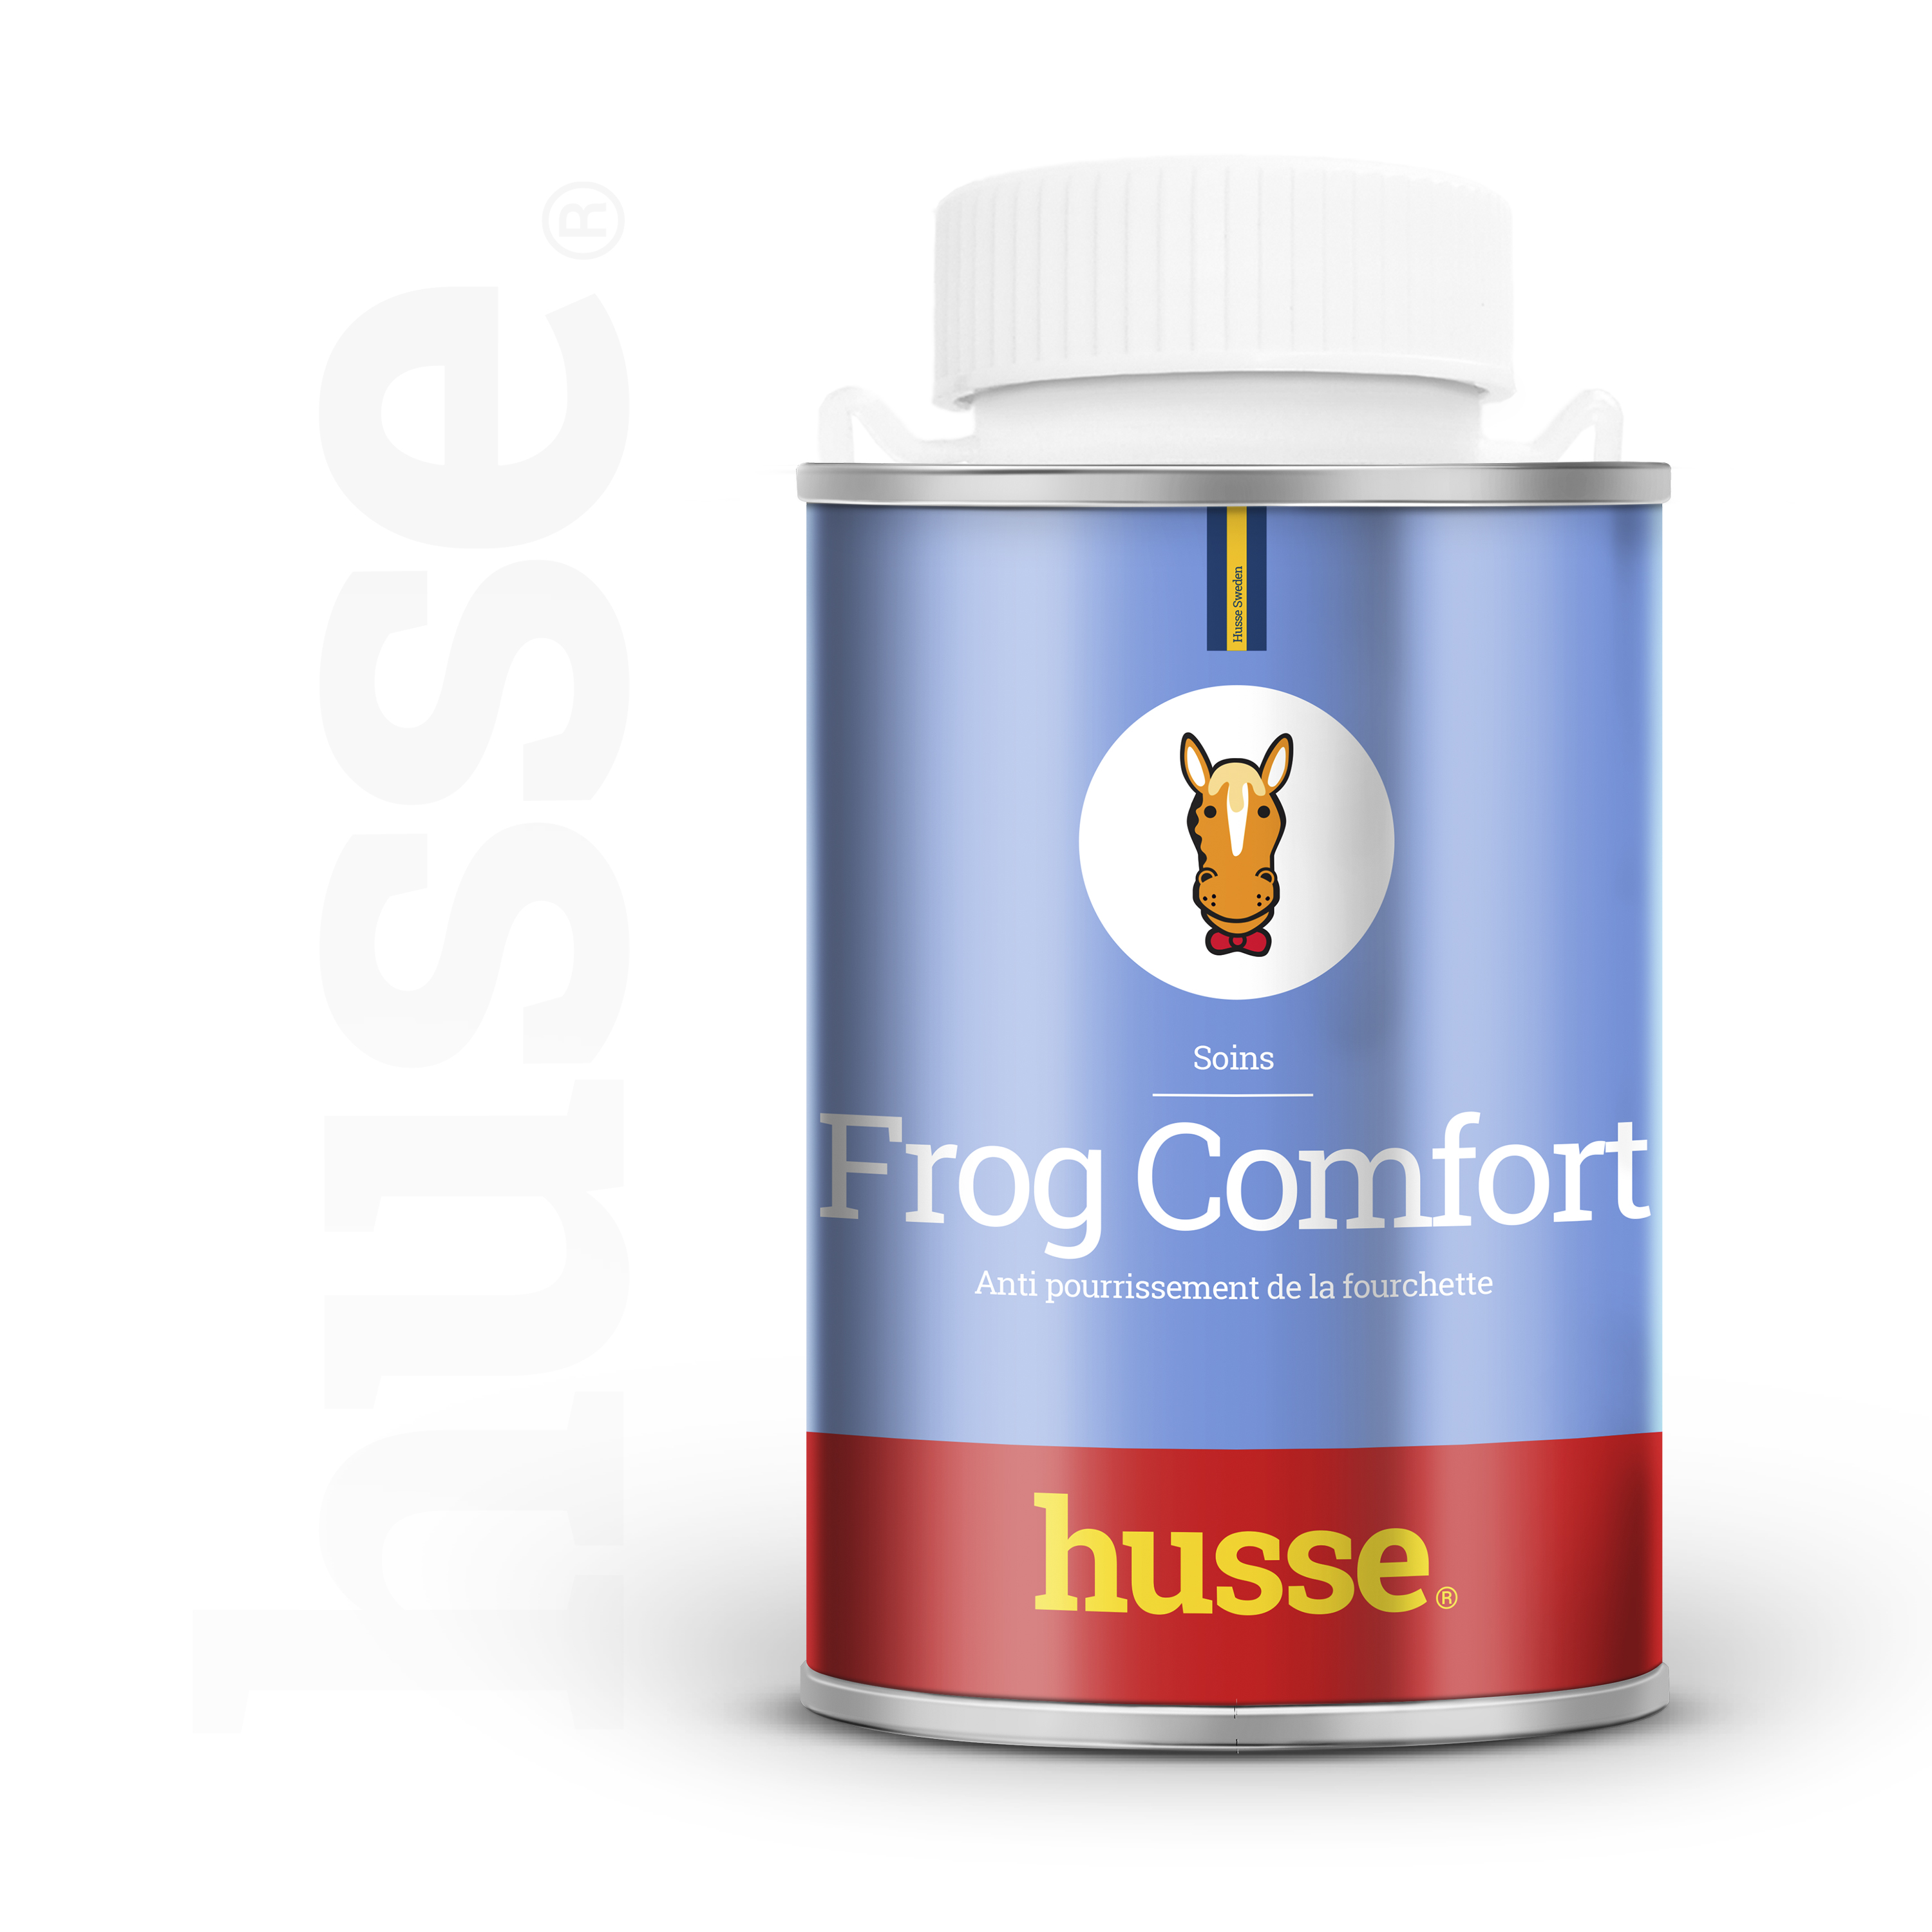 Huile de Soin pour la Fourchette | Frog Comfort - 250 ml